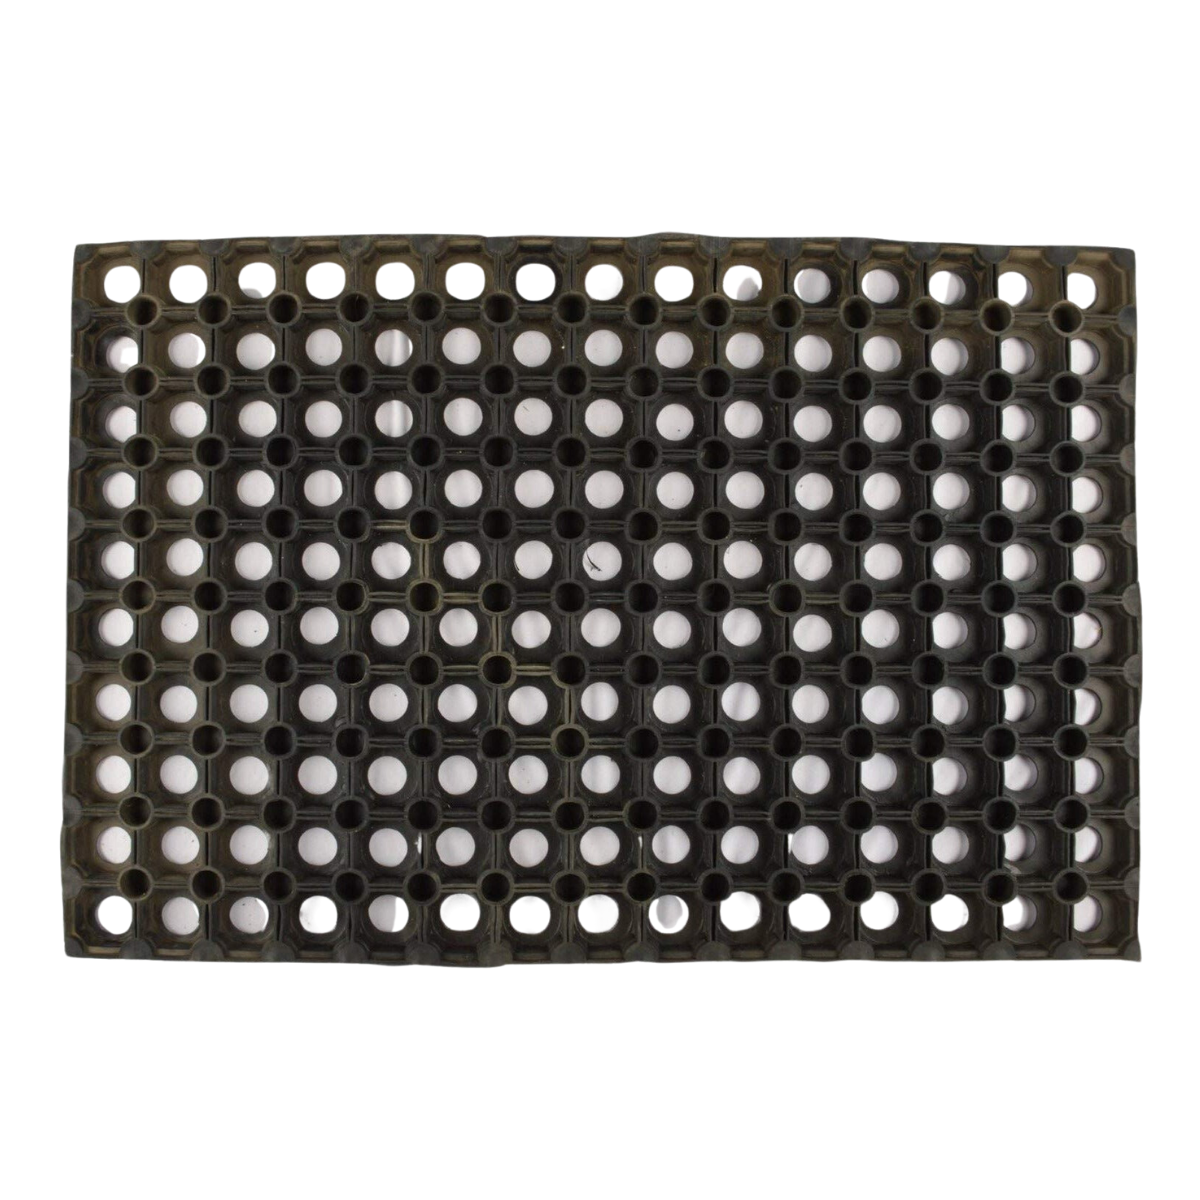 Rubber Hollow Doormat (16mm) 50x100cm